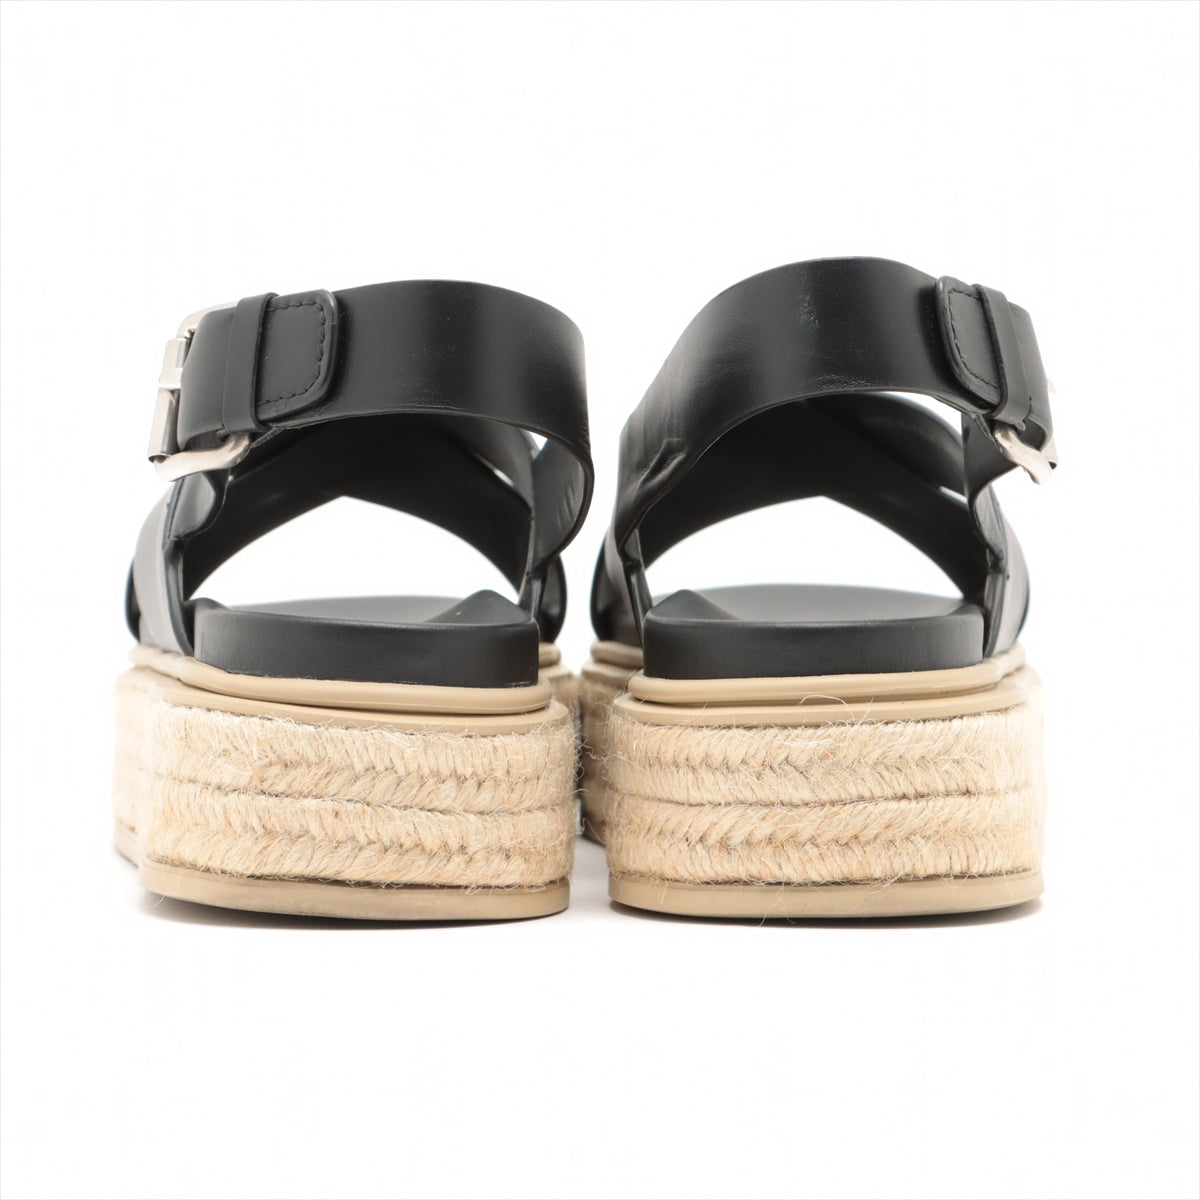 Prada Leather Sandals 40 Ladies' Black Espadrilles Box Bag Included